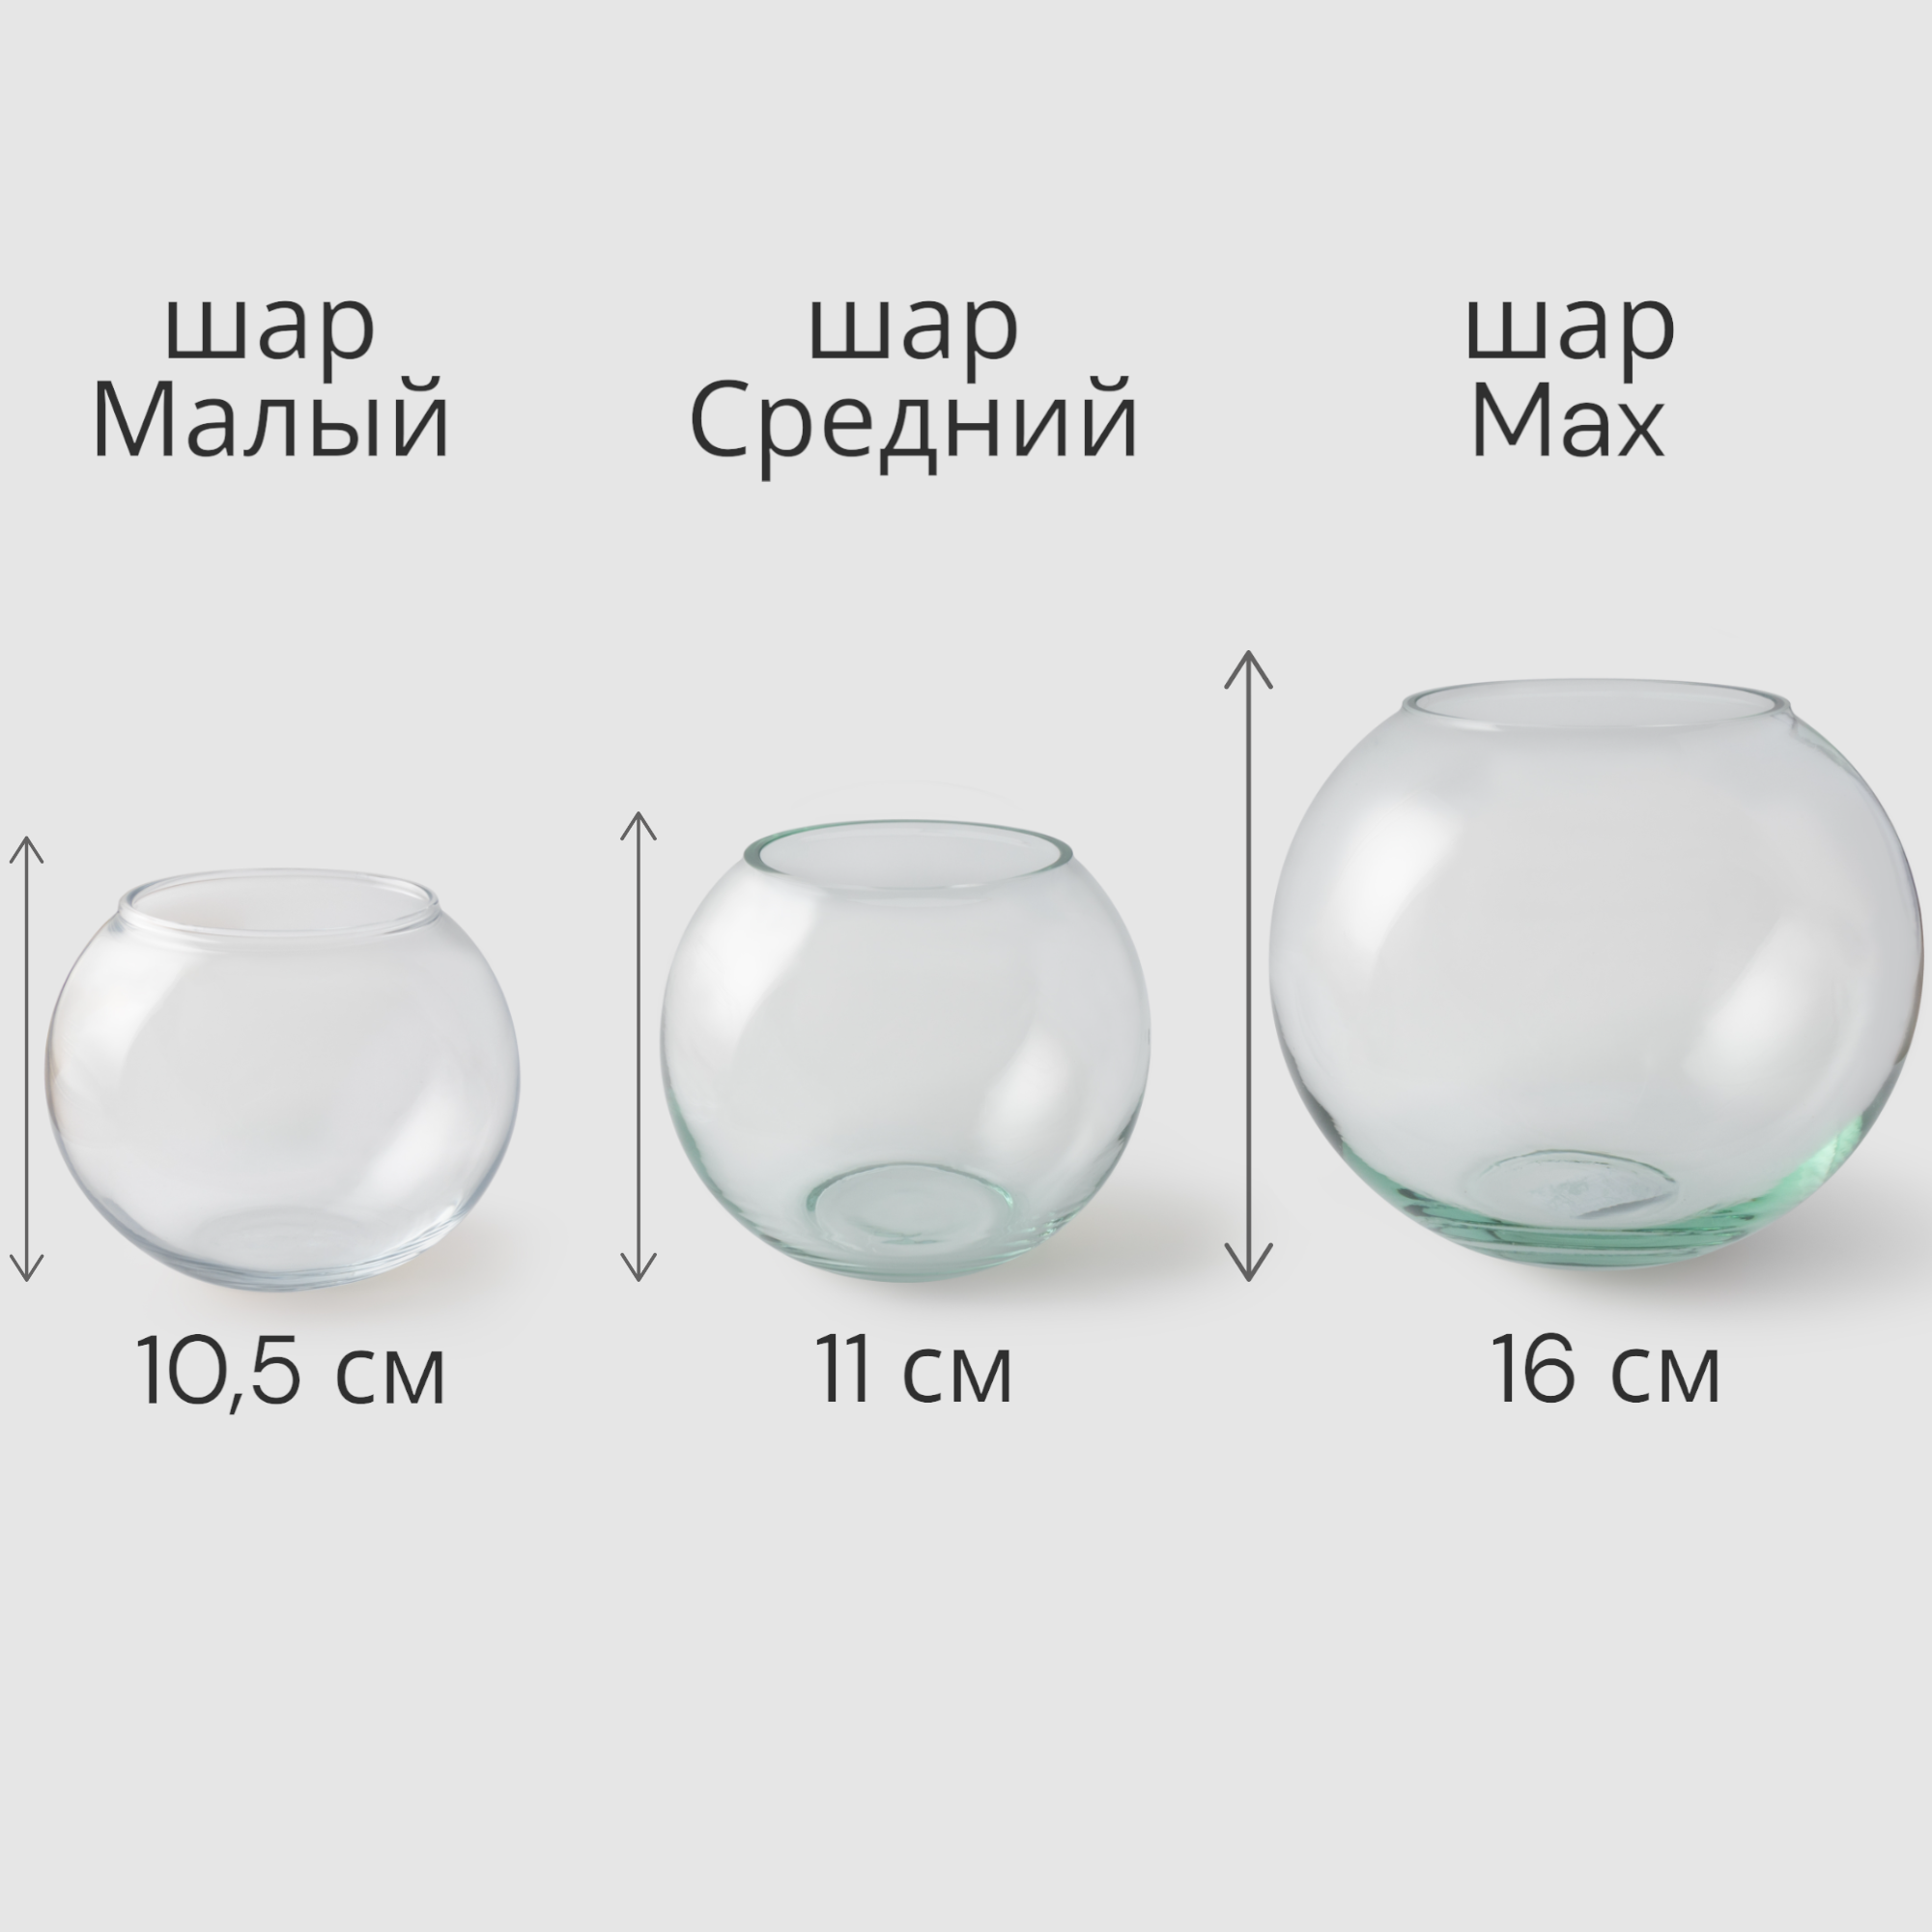 Ваза круглая стеклянная для декора, шар Max, объем 2,4 л, высота 16 см, диаметр 18 см